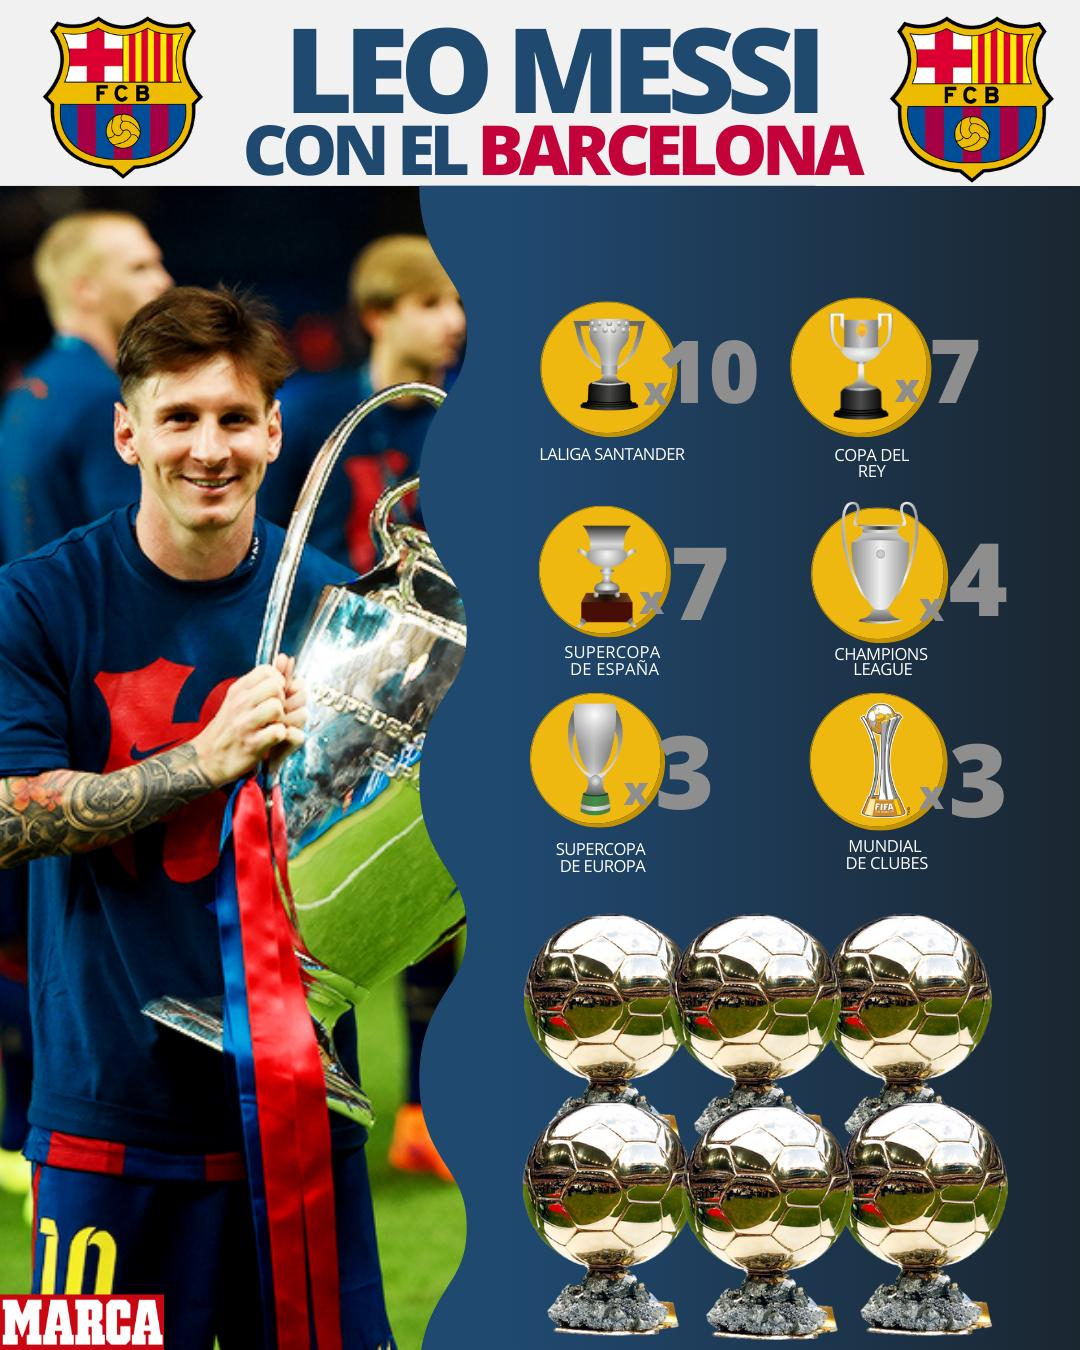 El palmars de Messi en el Barcelona Acumula ms de 30 ttulos!